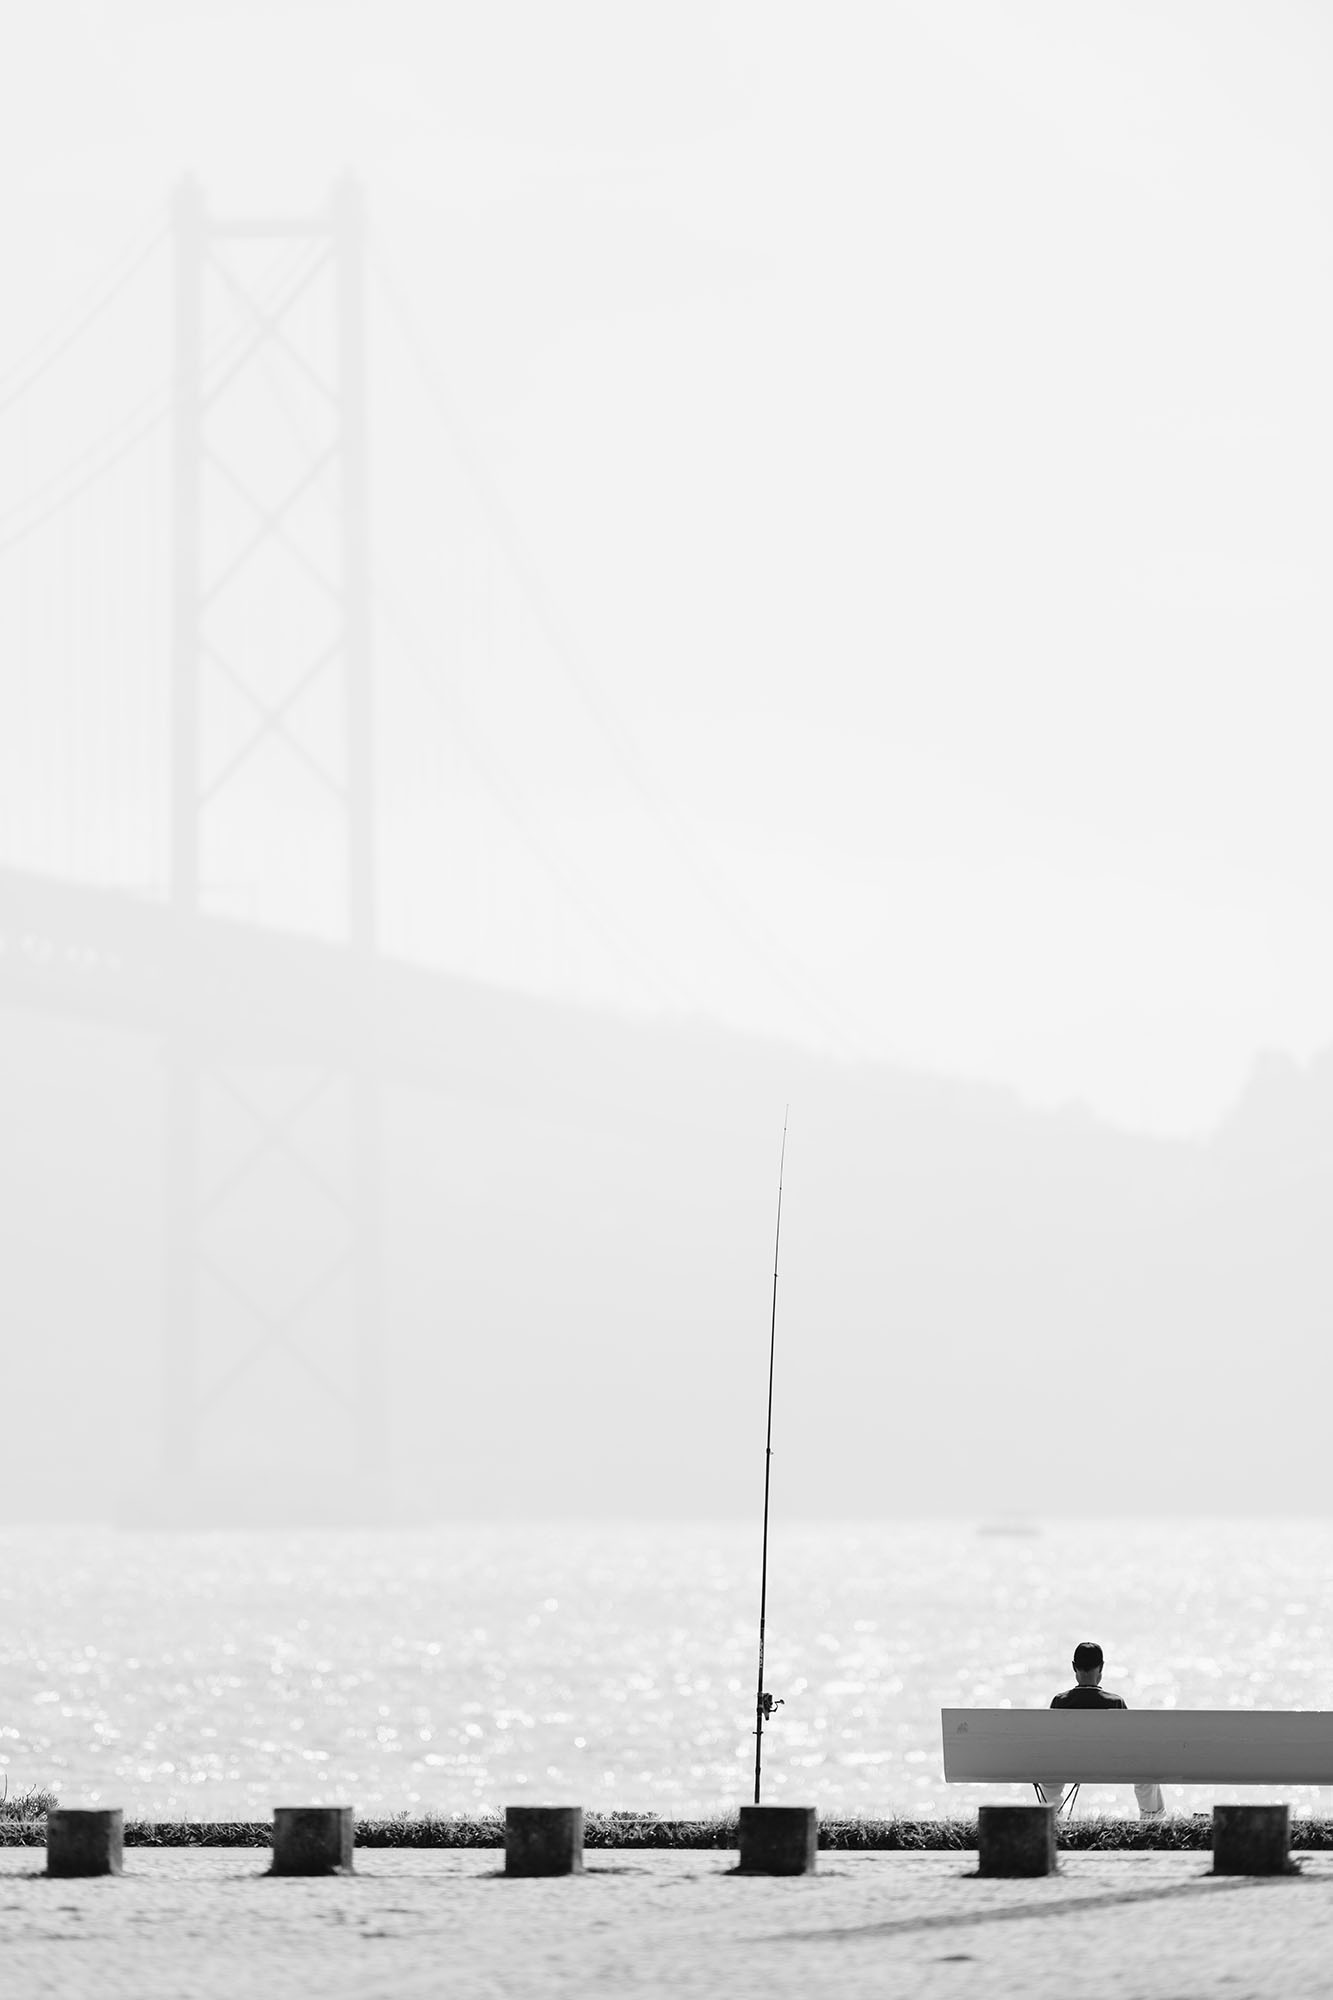 Fisherman and the 25 de Abril Bridge in Alcantara area of Lisbon, Portugal